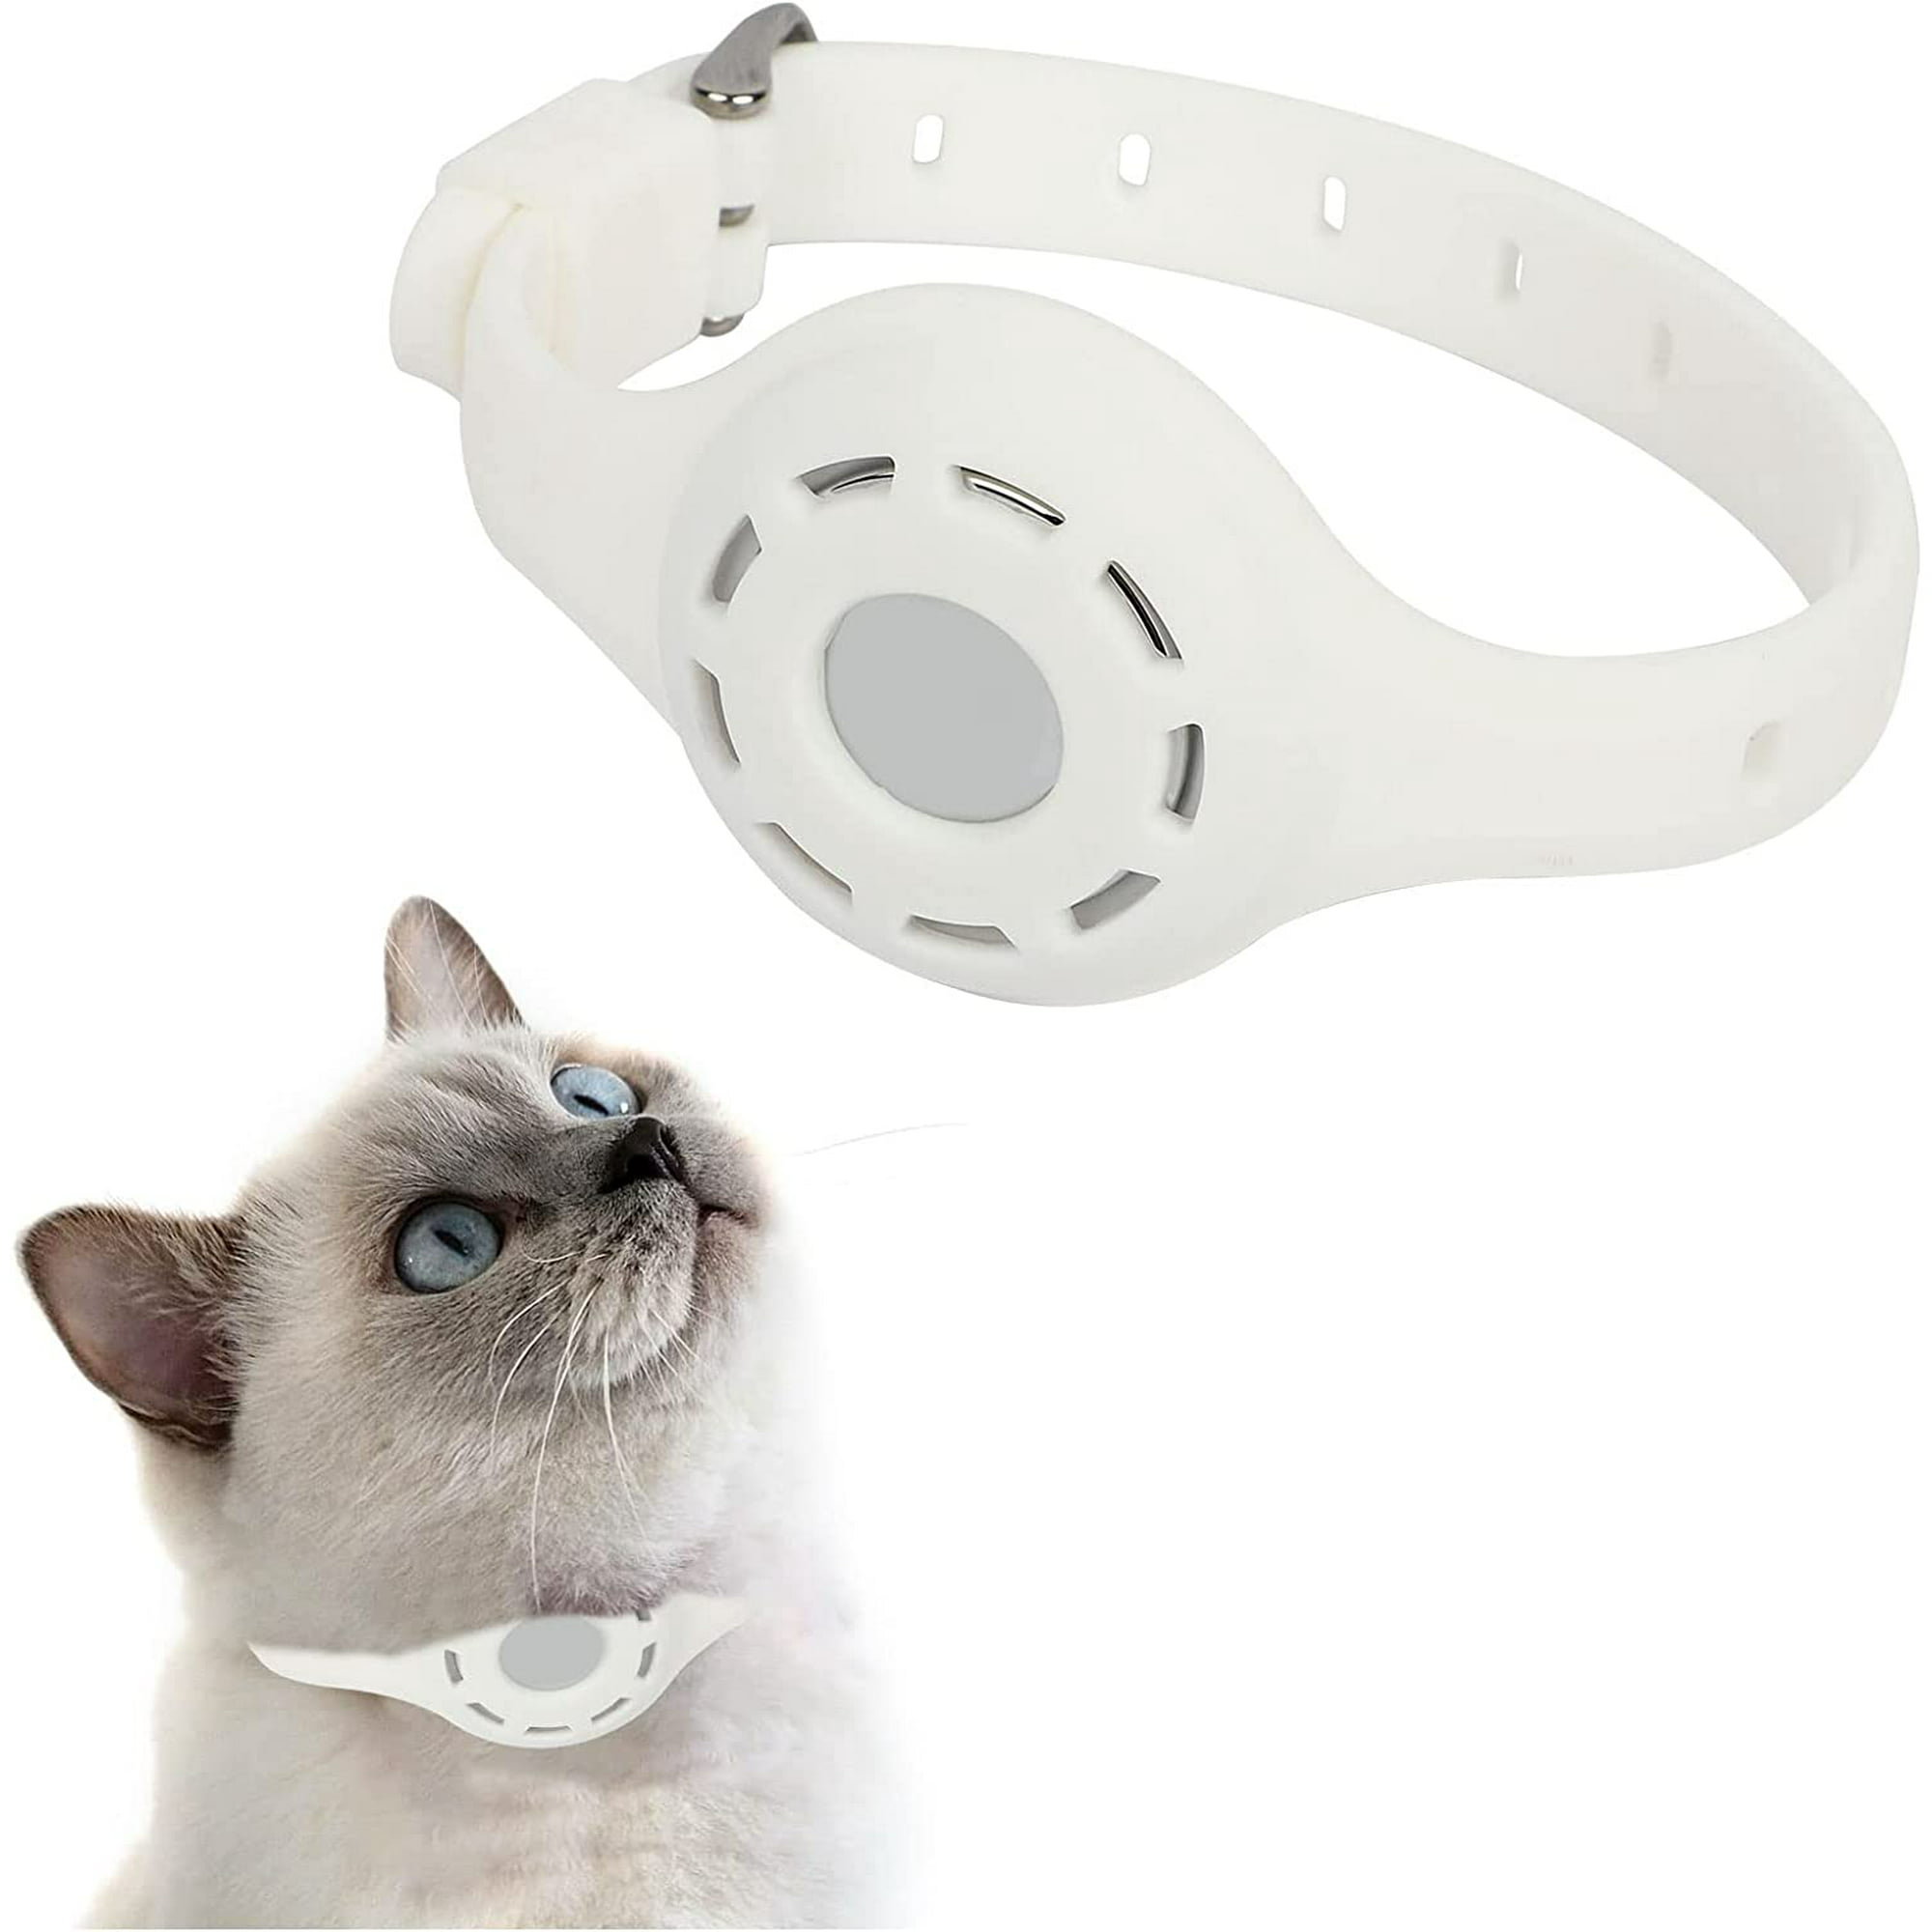 Funda protectora de silicona Compatible con Apple Airtag Collar perro gato  mascota - AliExpress